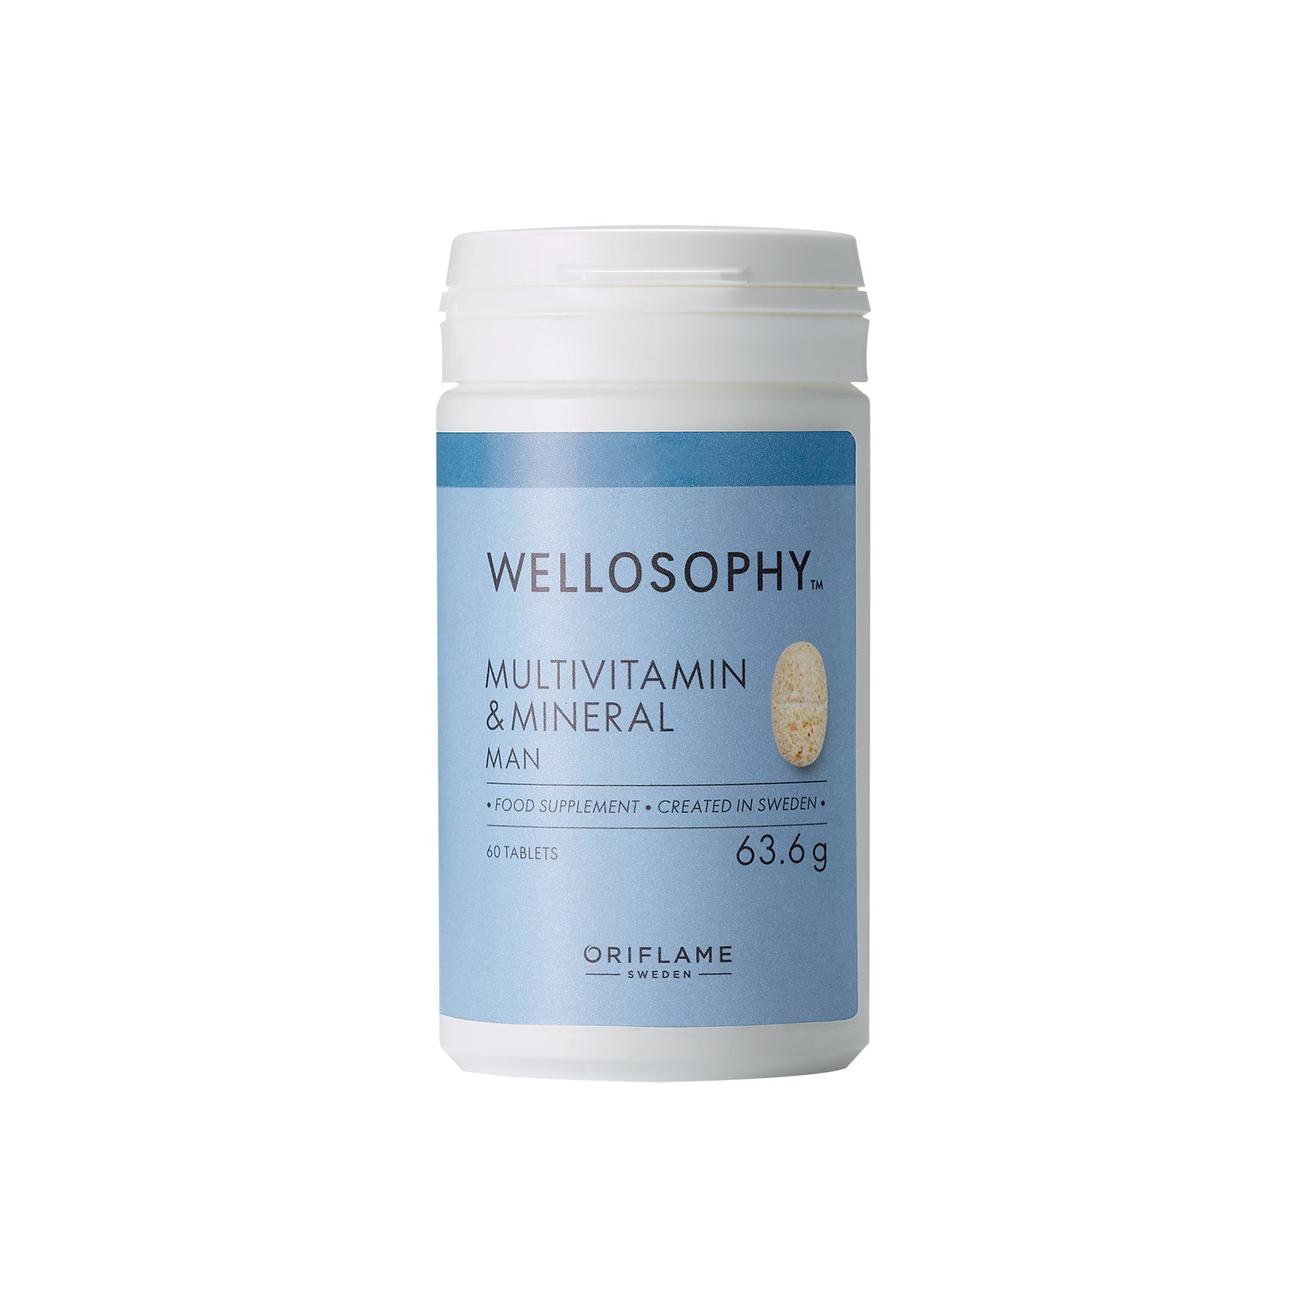 Wellosophy Multivitamin és ásványi anyagok étrend-kiegészítő tabletta férfiaknak kínálat, 5099 Ft a Oriflame -ben